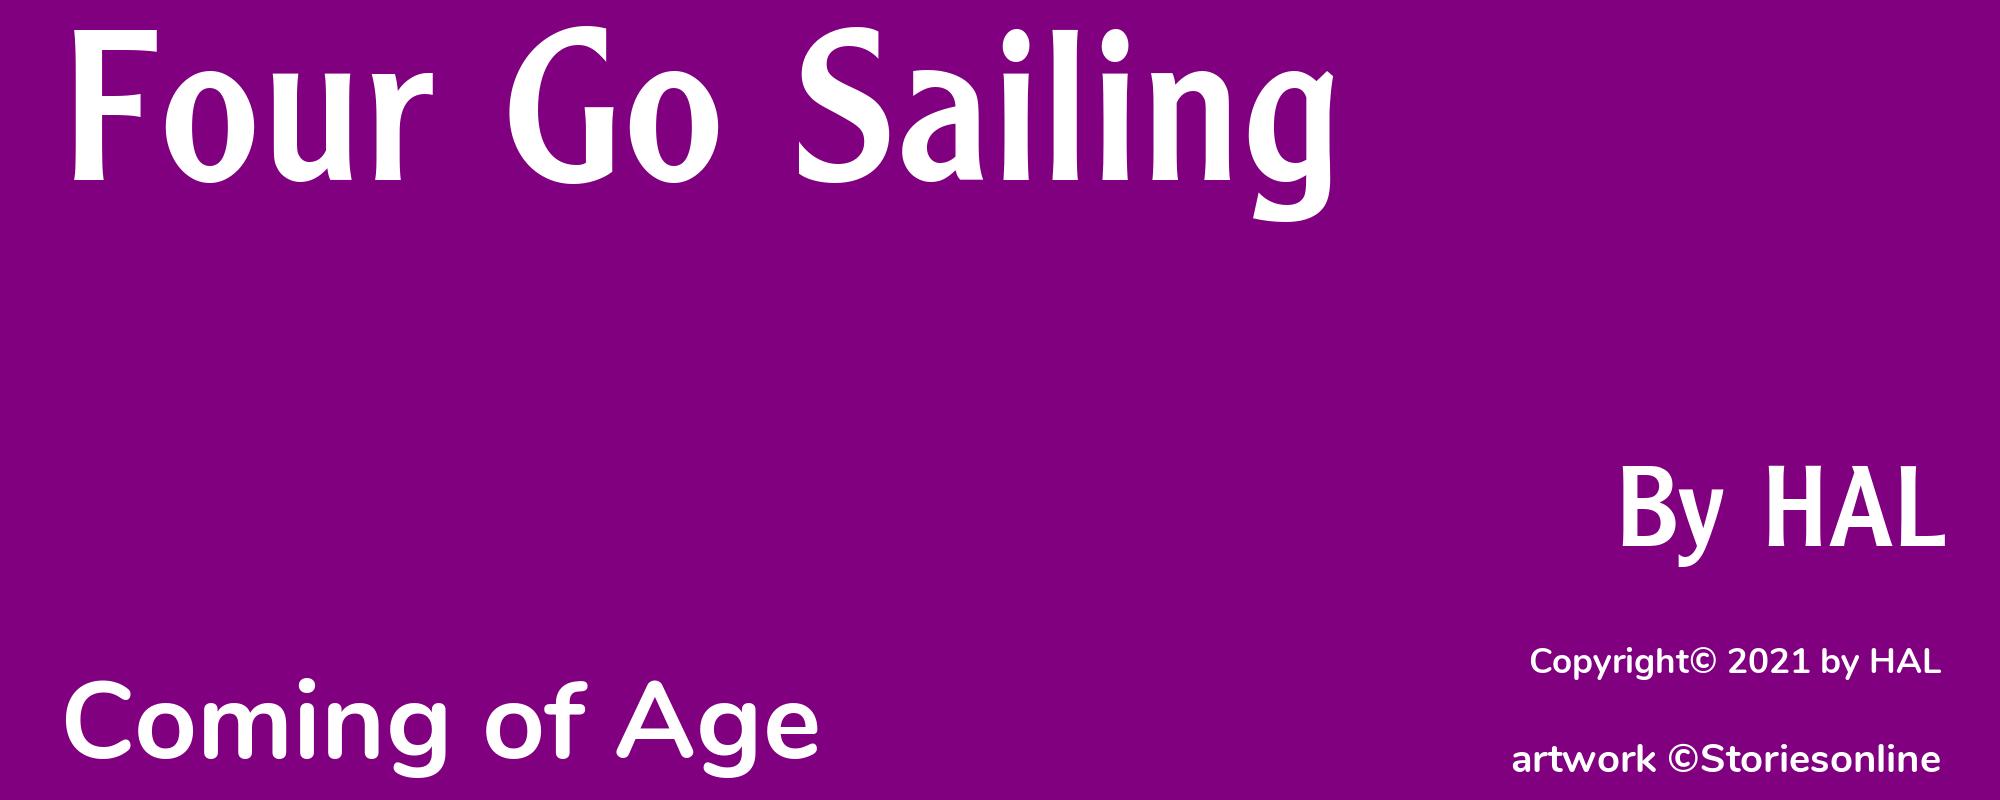 Four Go Sailing - Cover